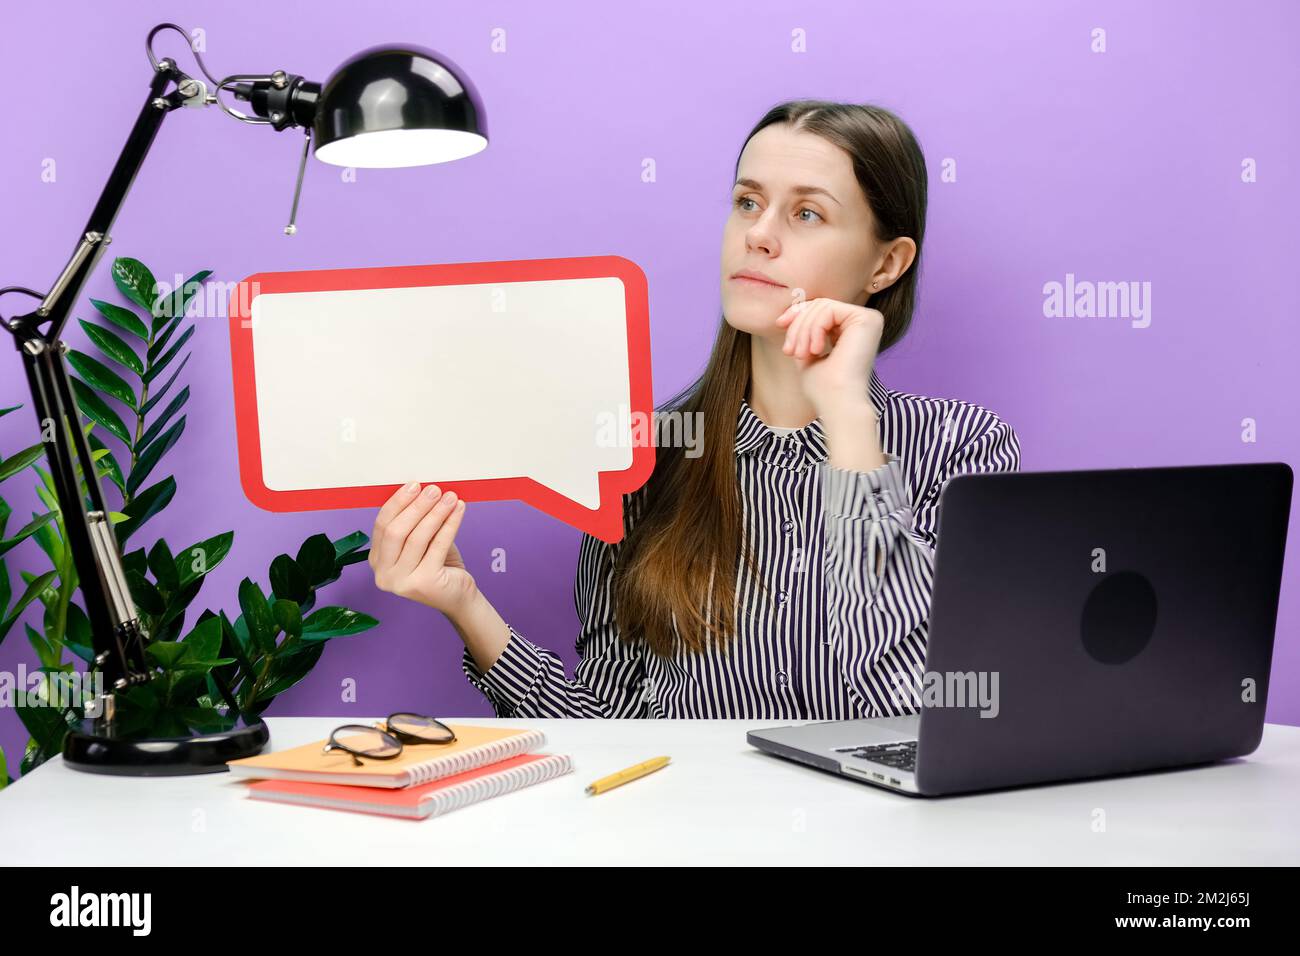 Eine junge Geschäftsfrau, die mit einem leeren Laptop am weißen Büroschreibtisch sitzt, sagt, dass die Sprechblase in der Cloud Werbematerial aufbaut Stockfoto